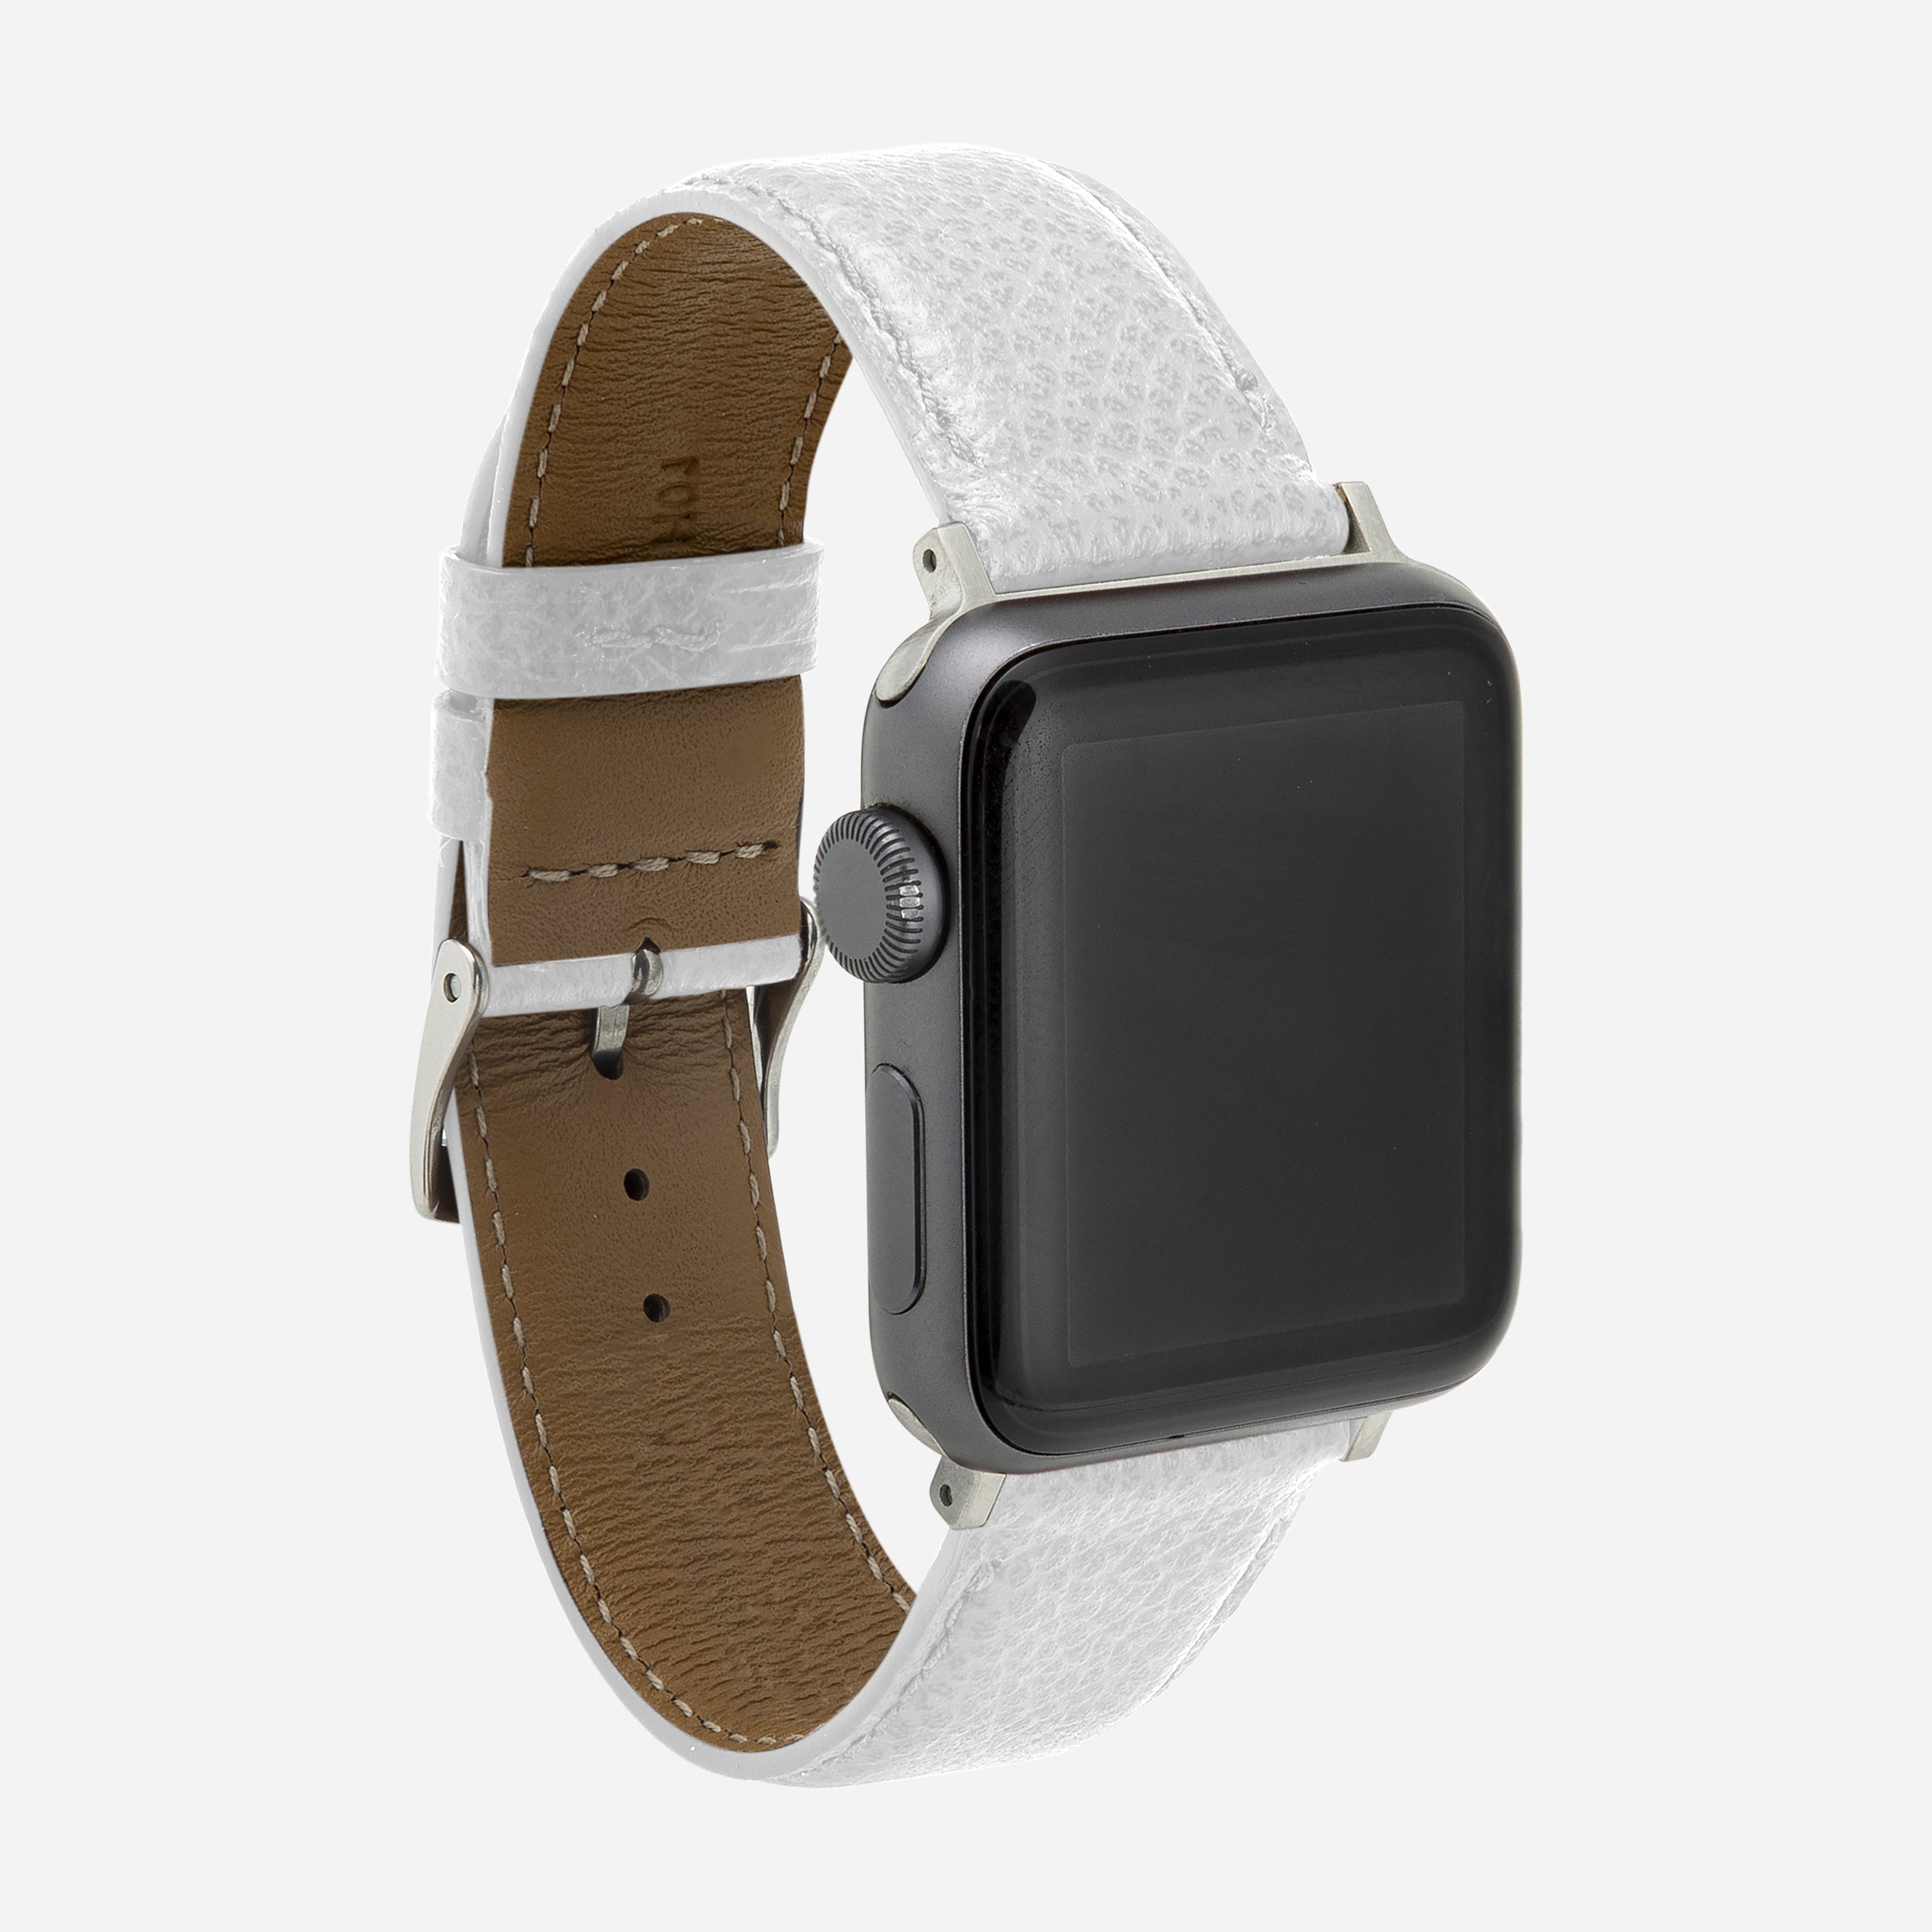 Bracelet en cuir pour montre Apple Watch